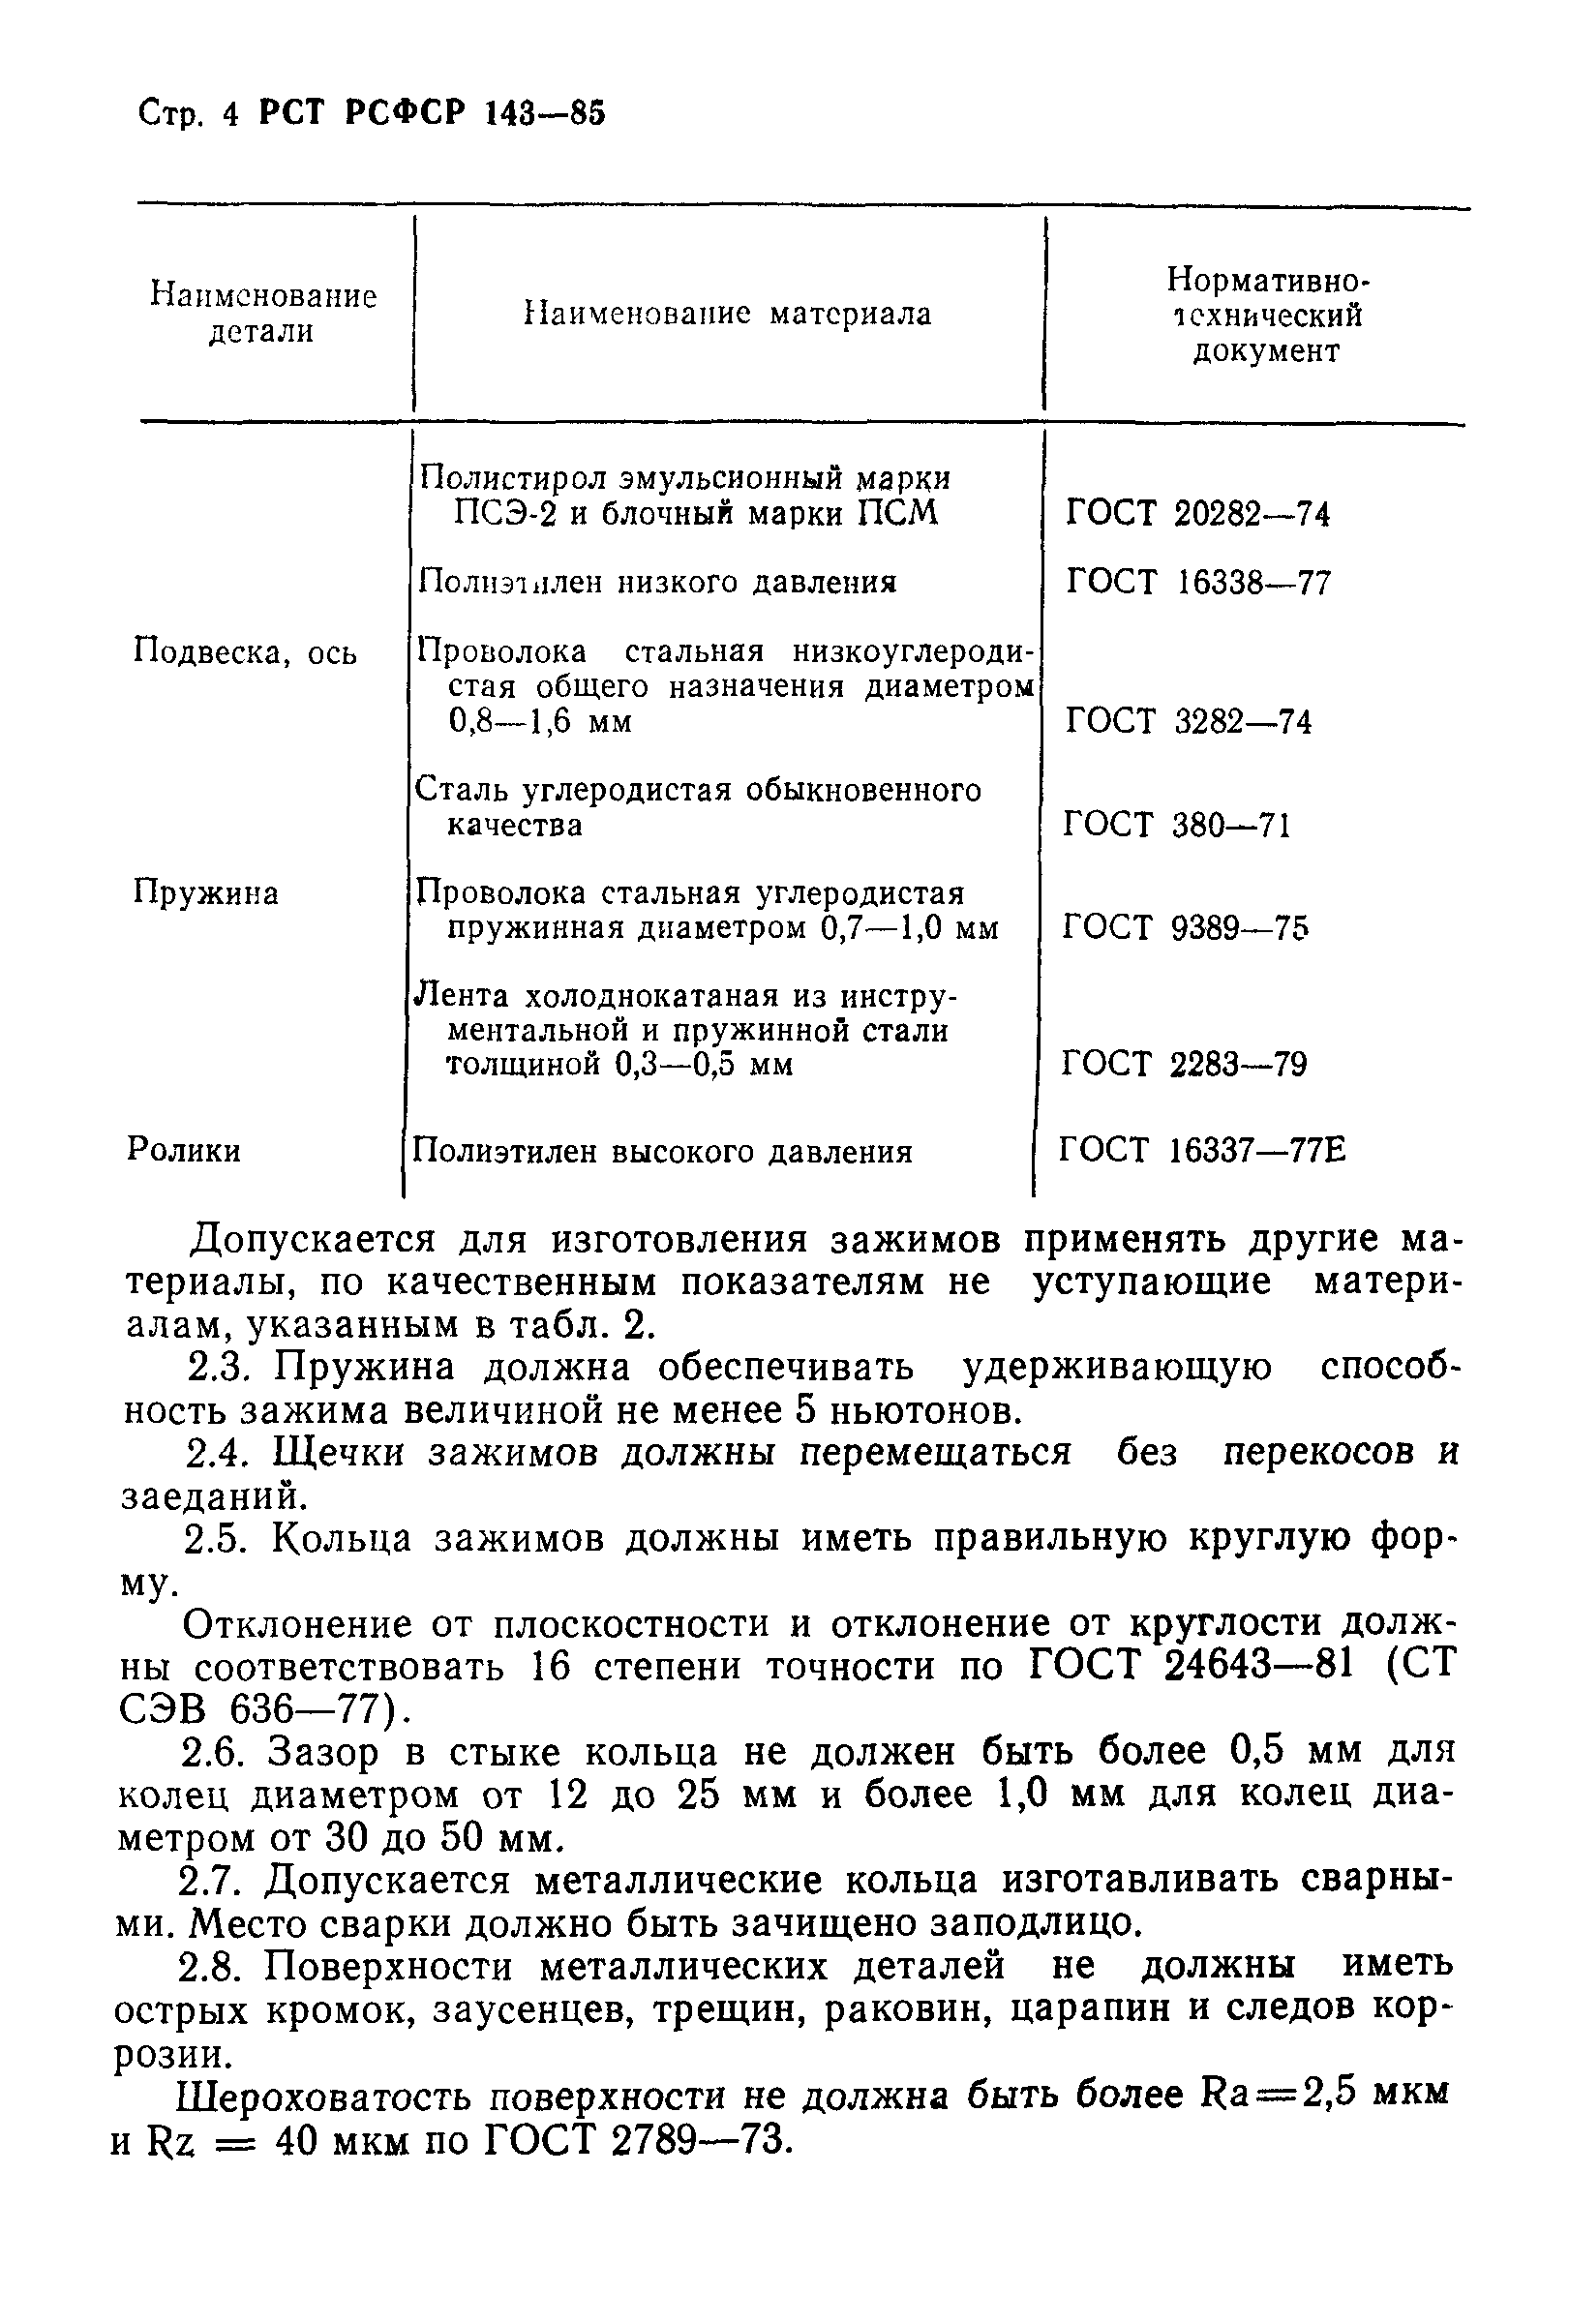 РСТ РСФСР 143-85